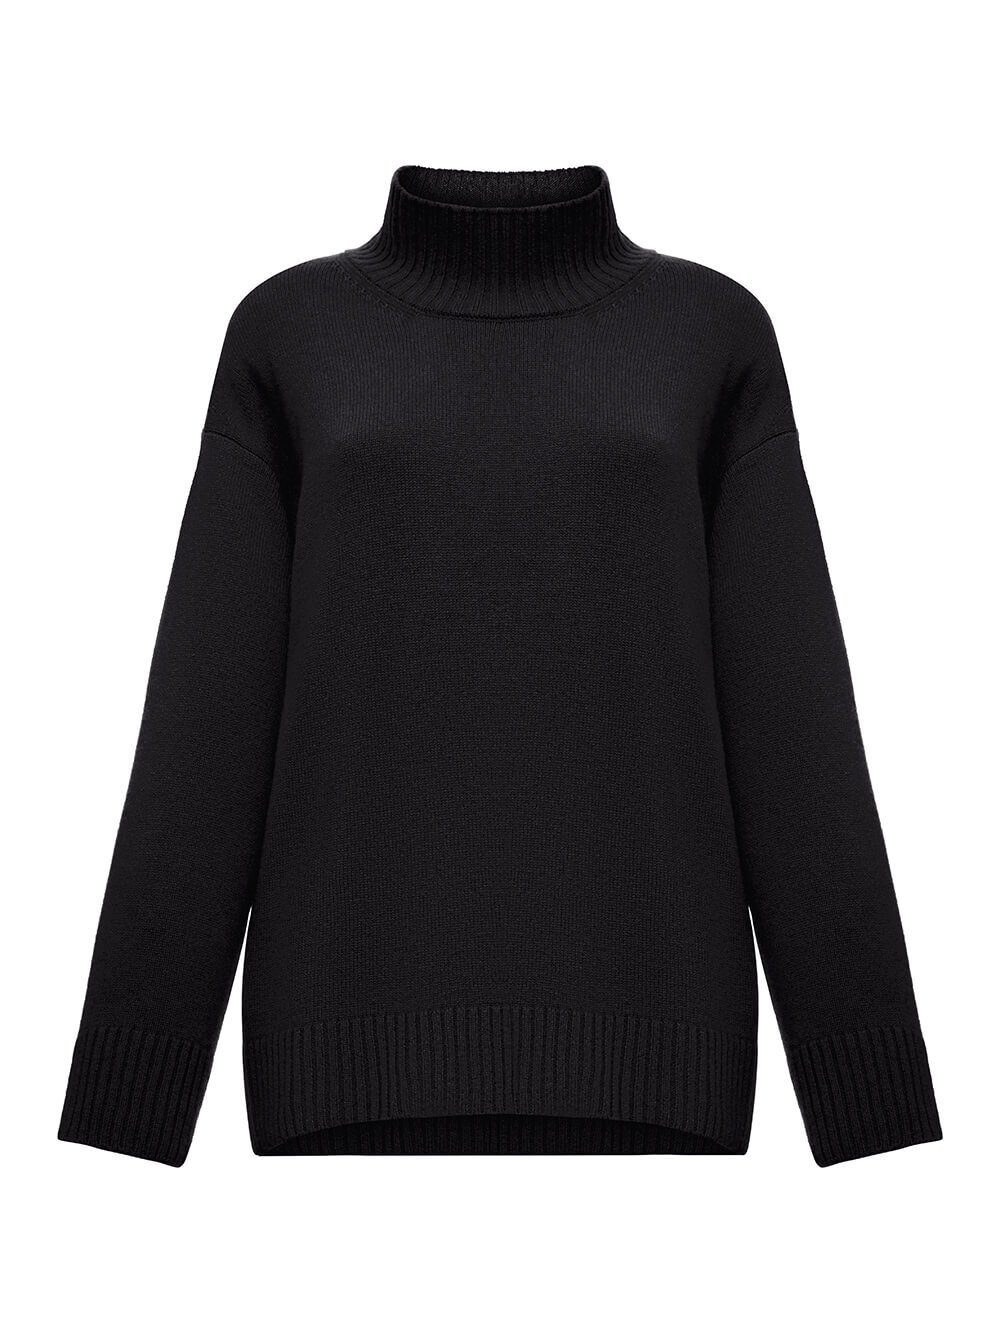 Женский свитер черного цвета из 100% кашемира